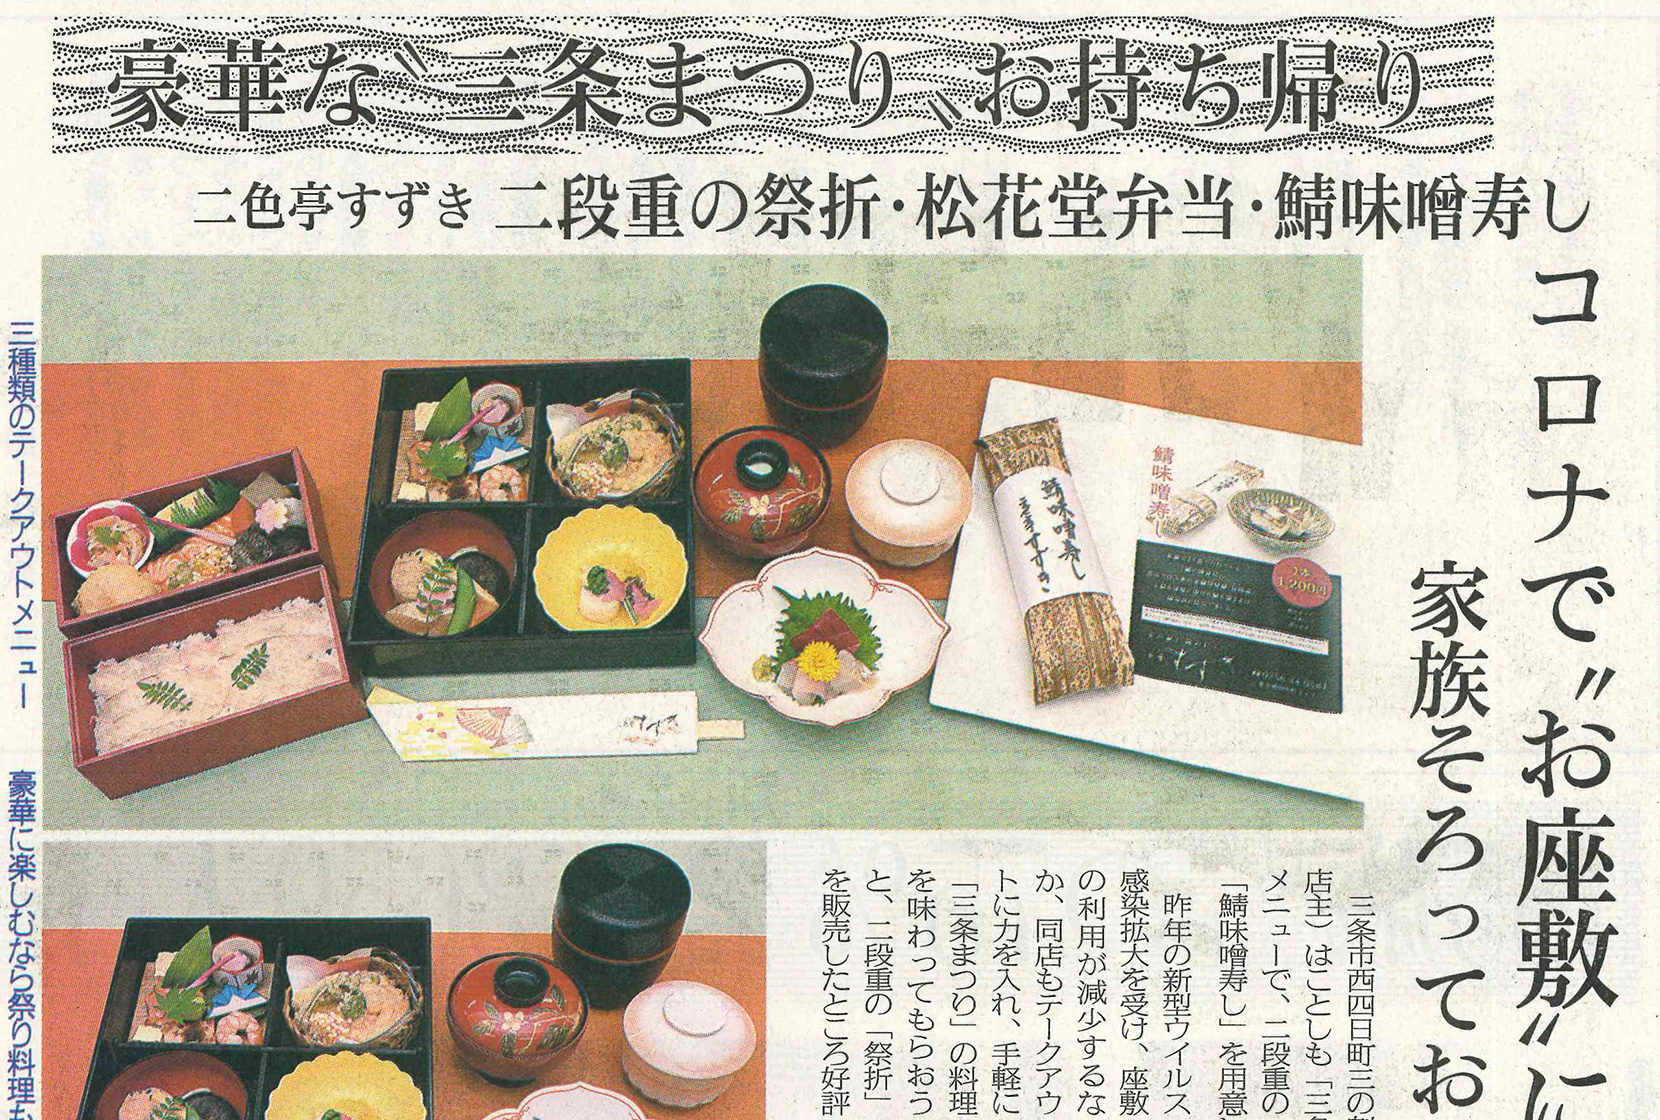 三條新聞に祭折・松花堂弁当・さば味噌寿しの記事掲載